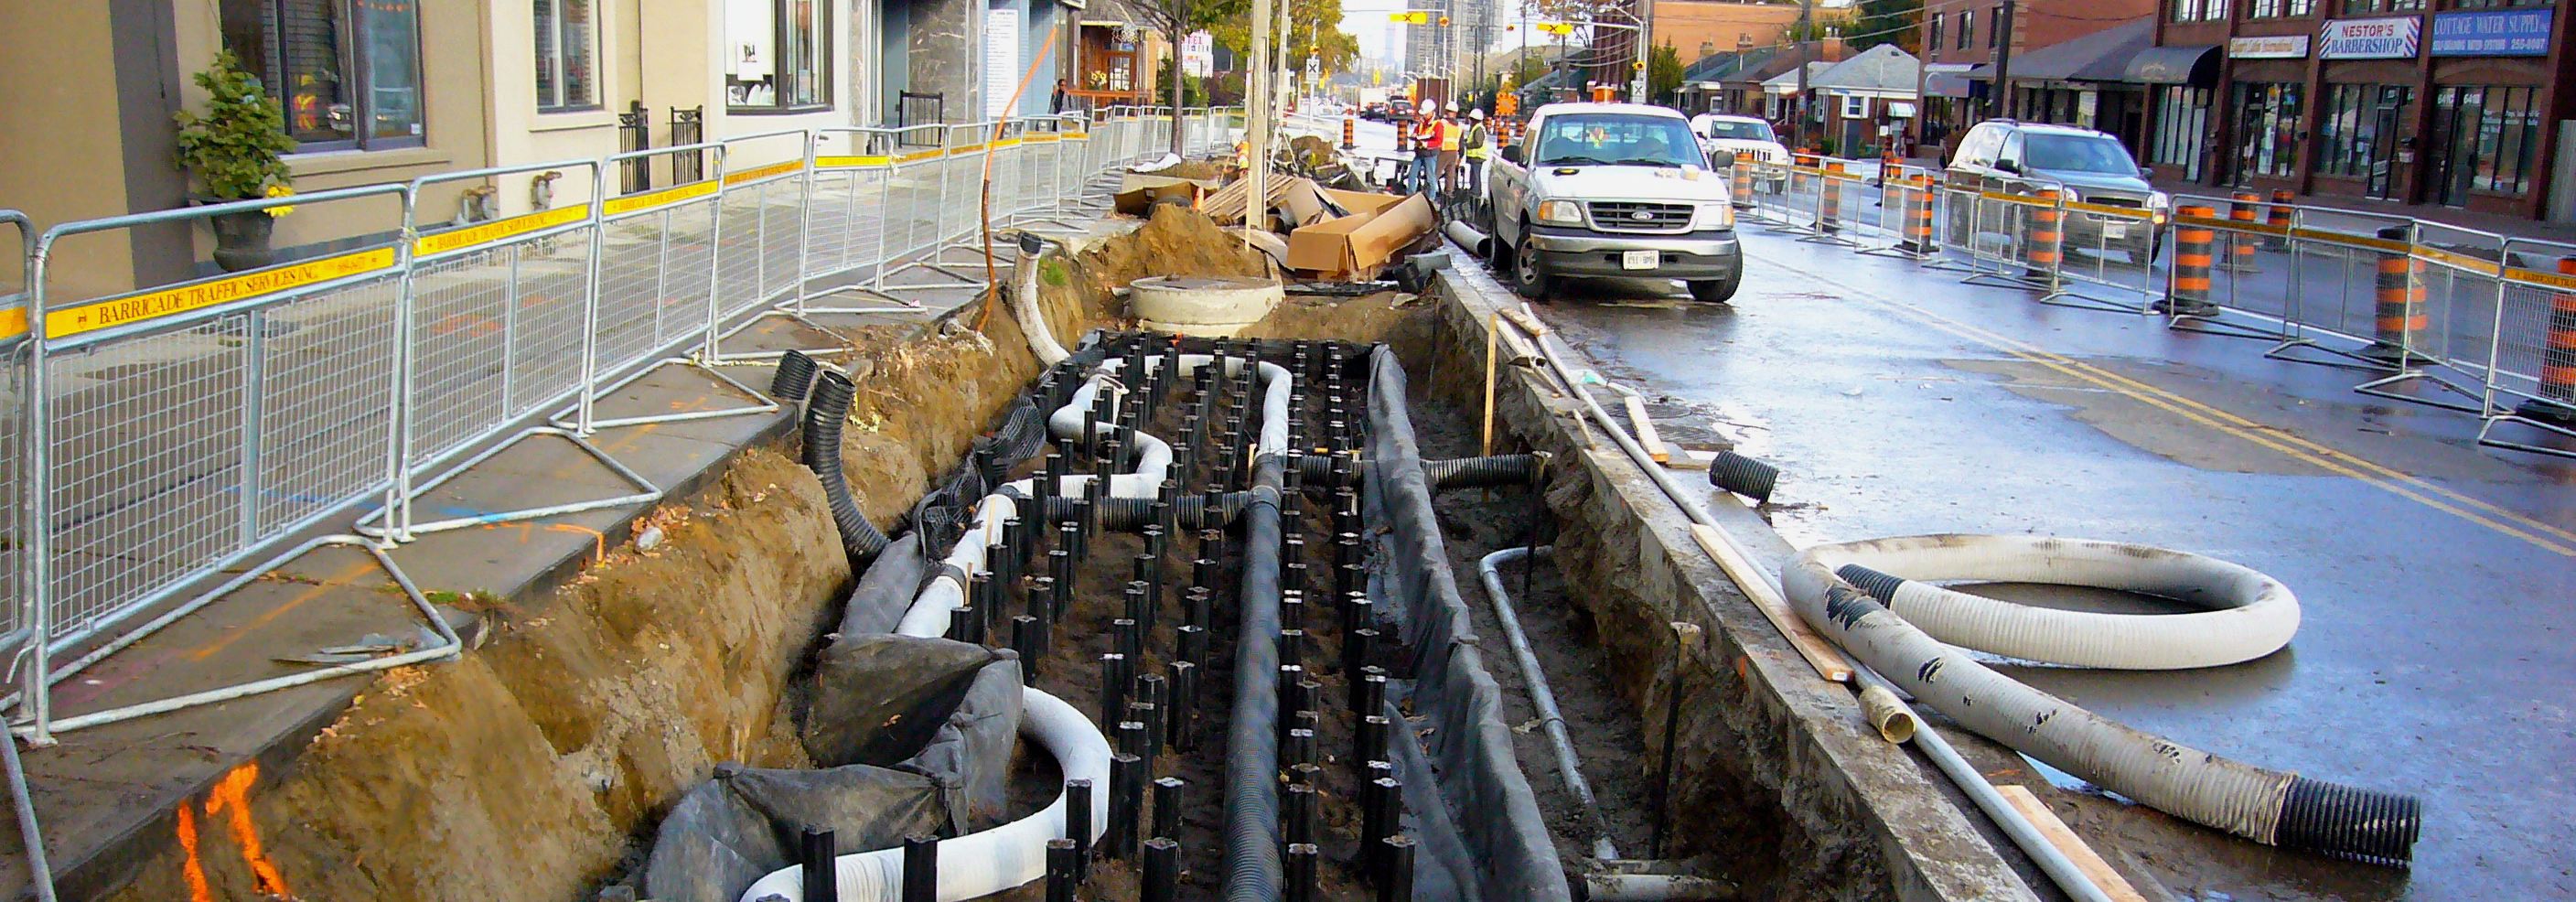 infrastructure being installed underground 